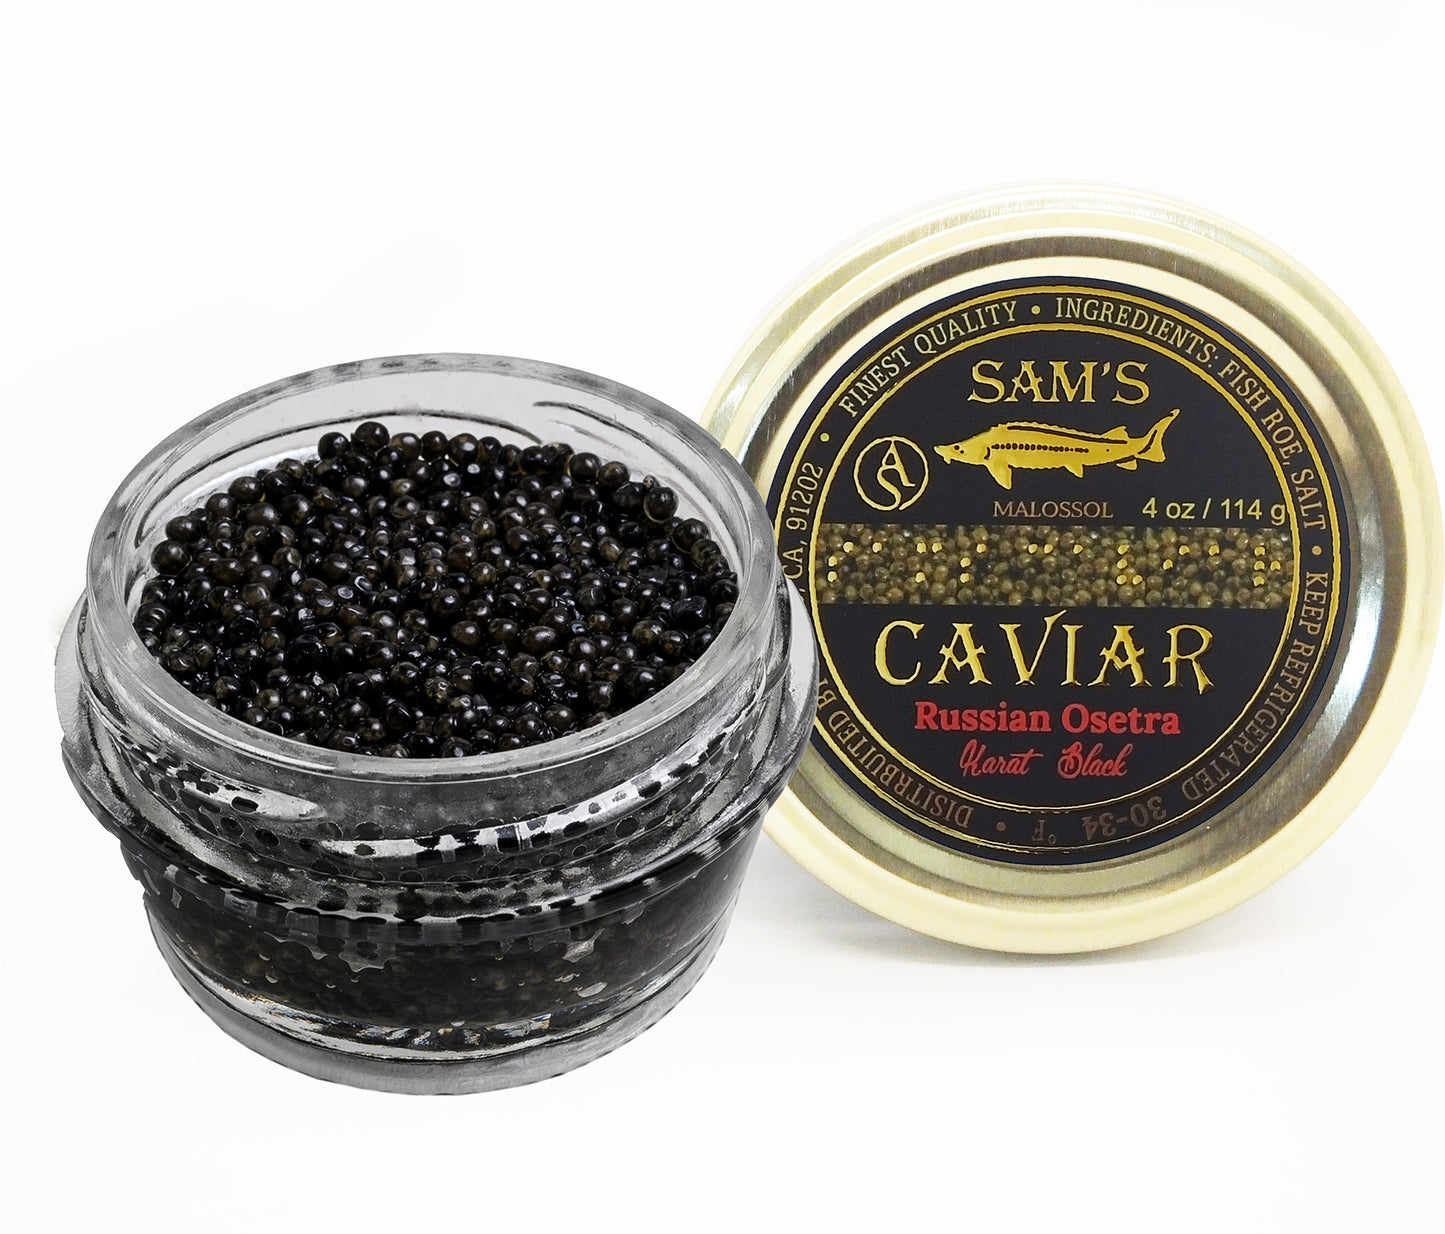 Russian_Osetra_Karat_Black_Caviar